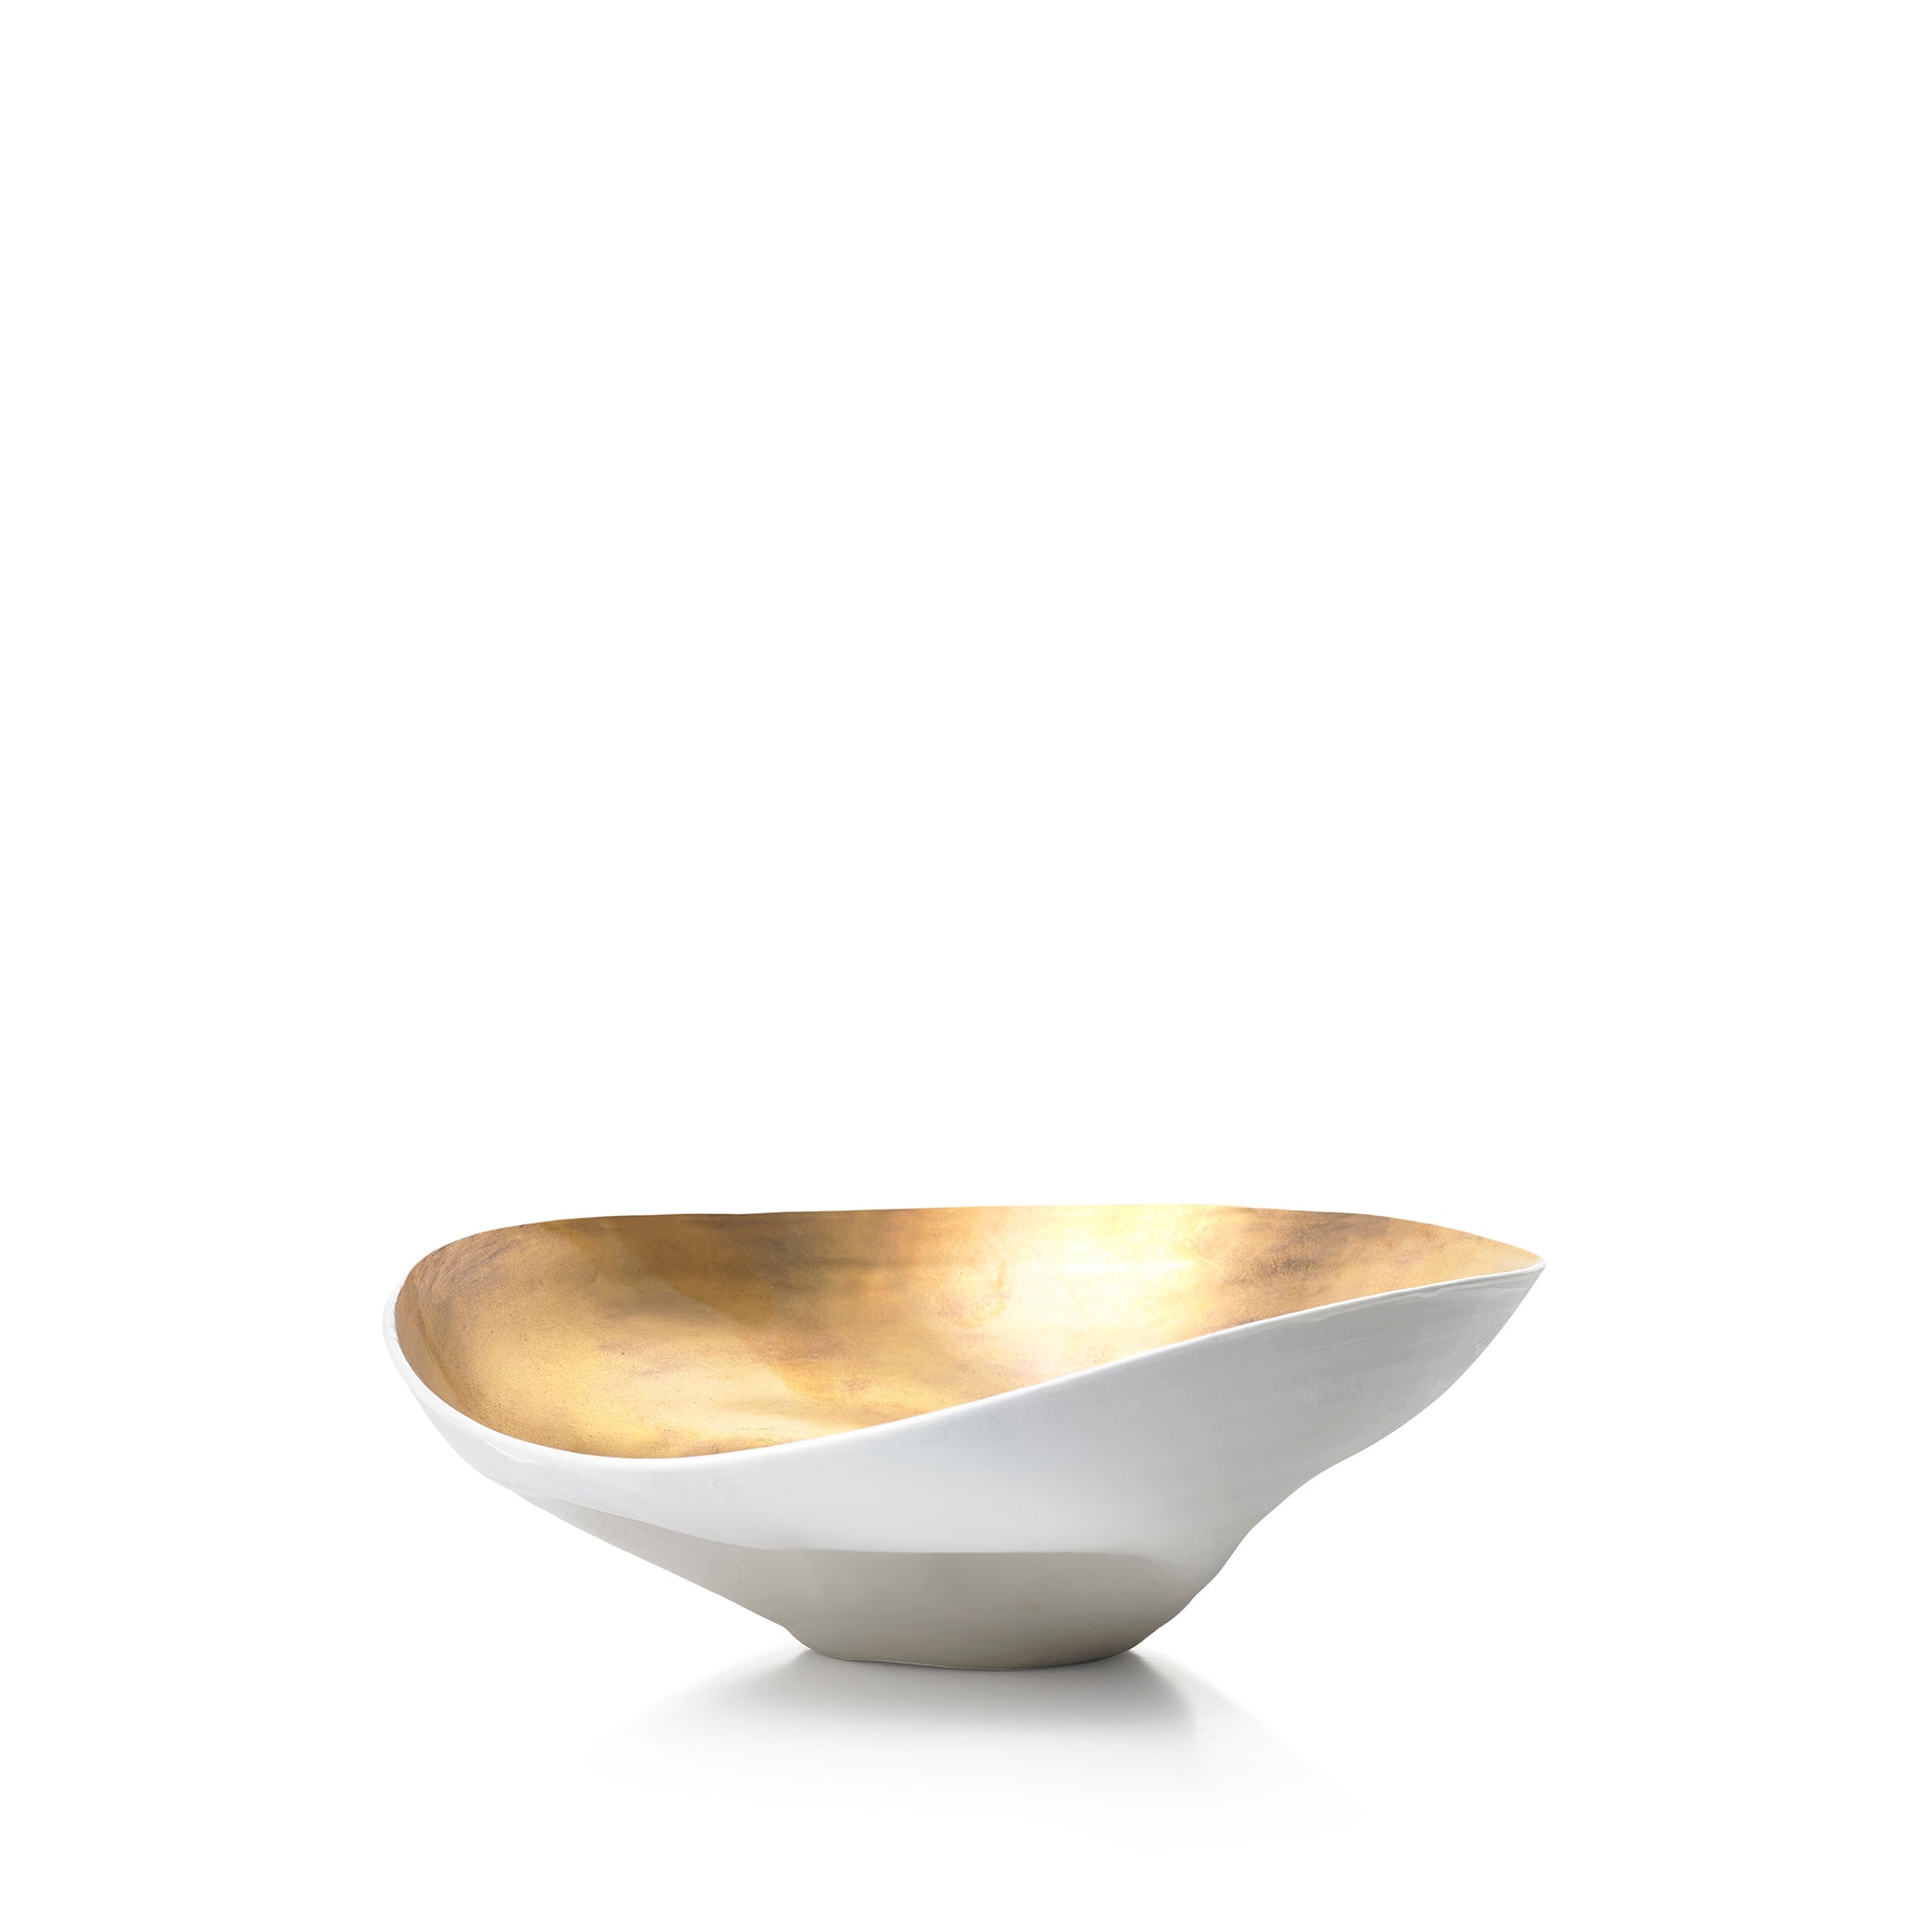 Medium Porcelain Shell Bowl in Gold, 18cm